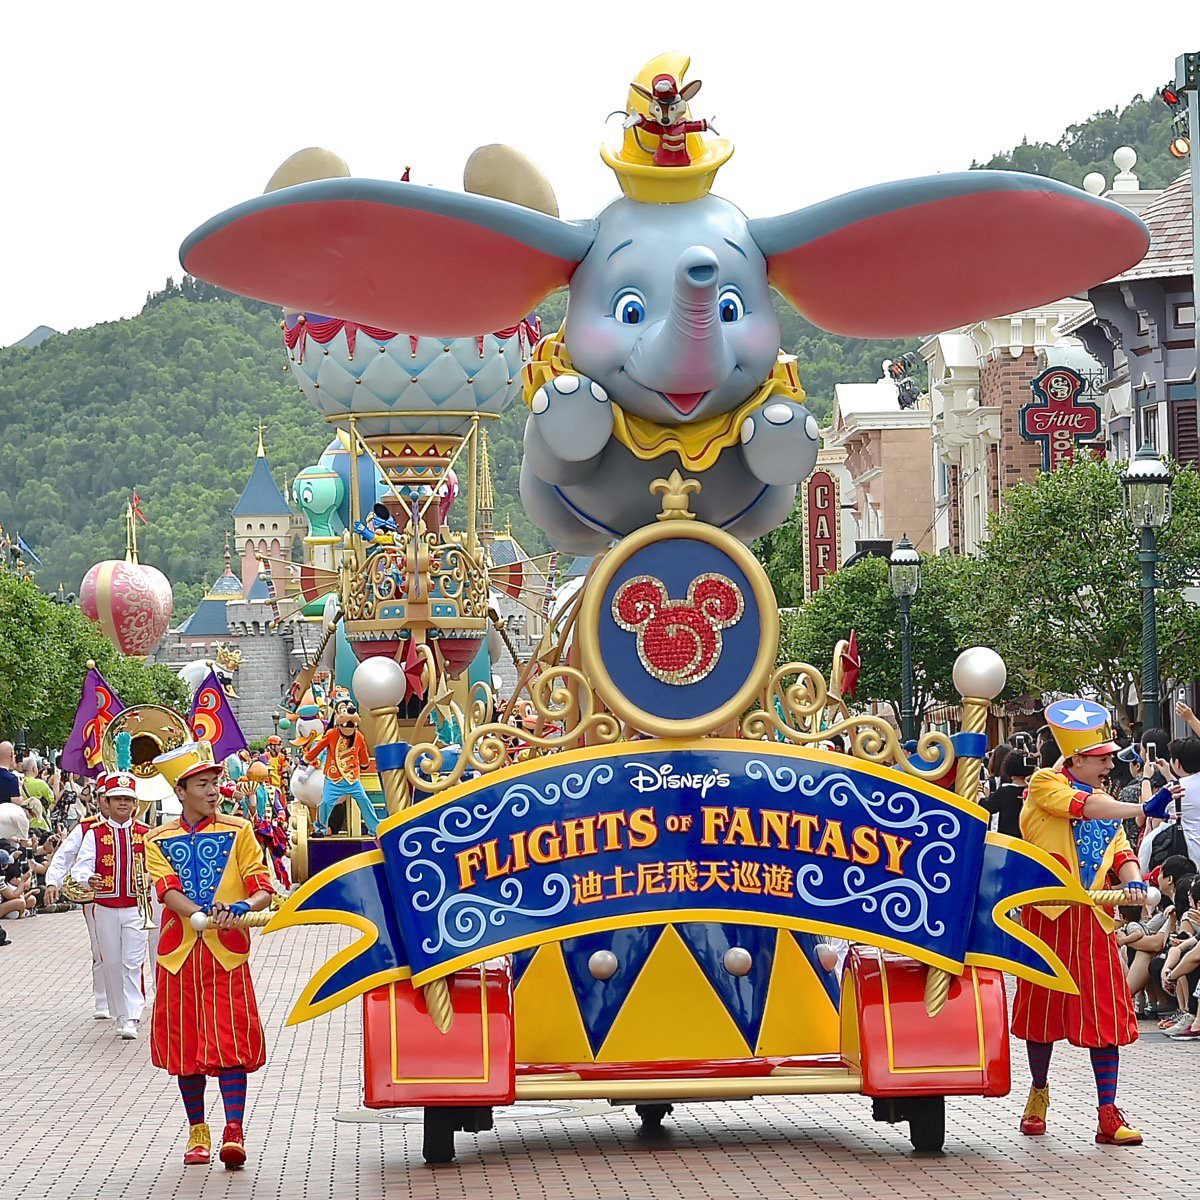 巨大フロートが続々と登場 香港ディズニーランド パーク フライト オブ ファンタジー パレード